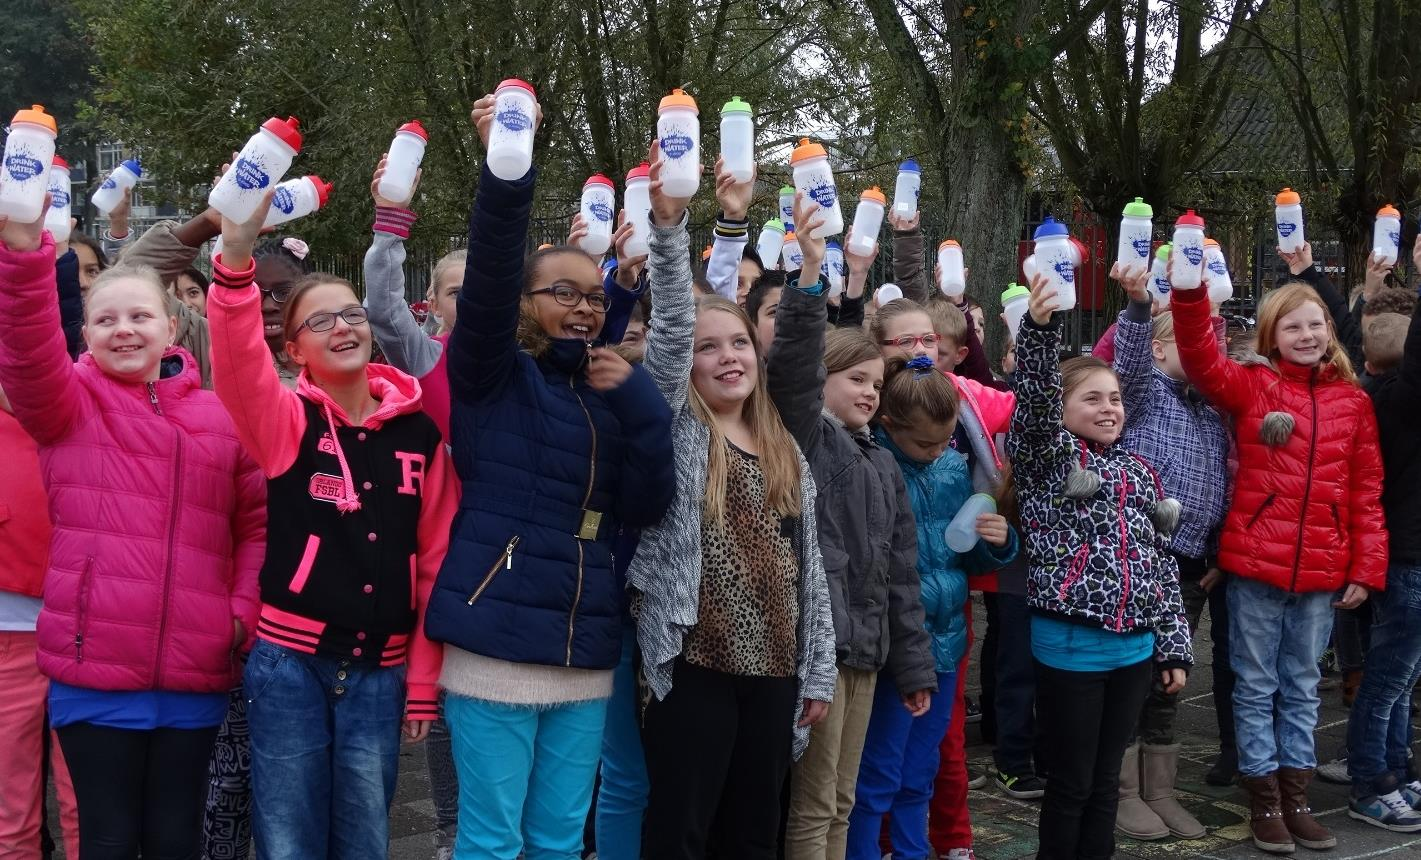 De oogst van 3 jaar JOGG Zwijndrecht: Tien van de 22 basisschoollocaties (45%) in Zwijndrecht zijn actief met water drinken gestart met als doel dat alle scholen gaan meedoen; De water-kickoff op